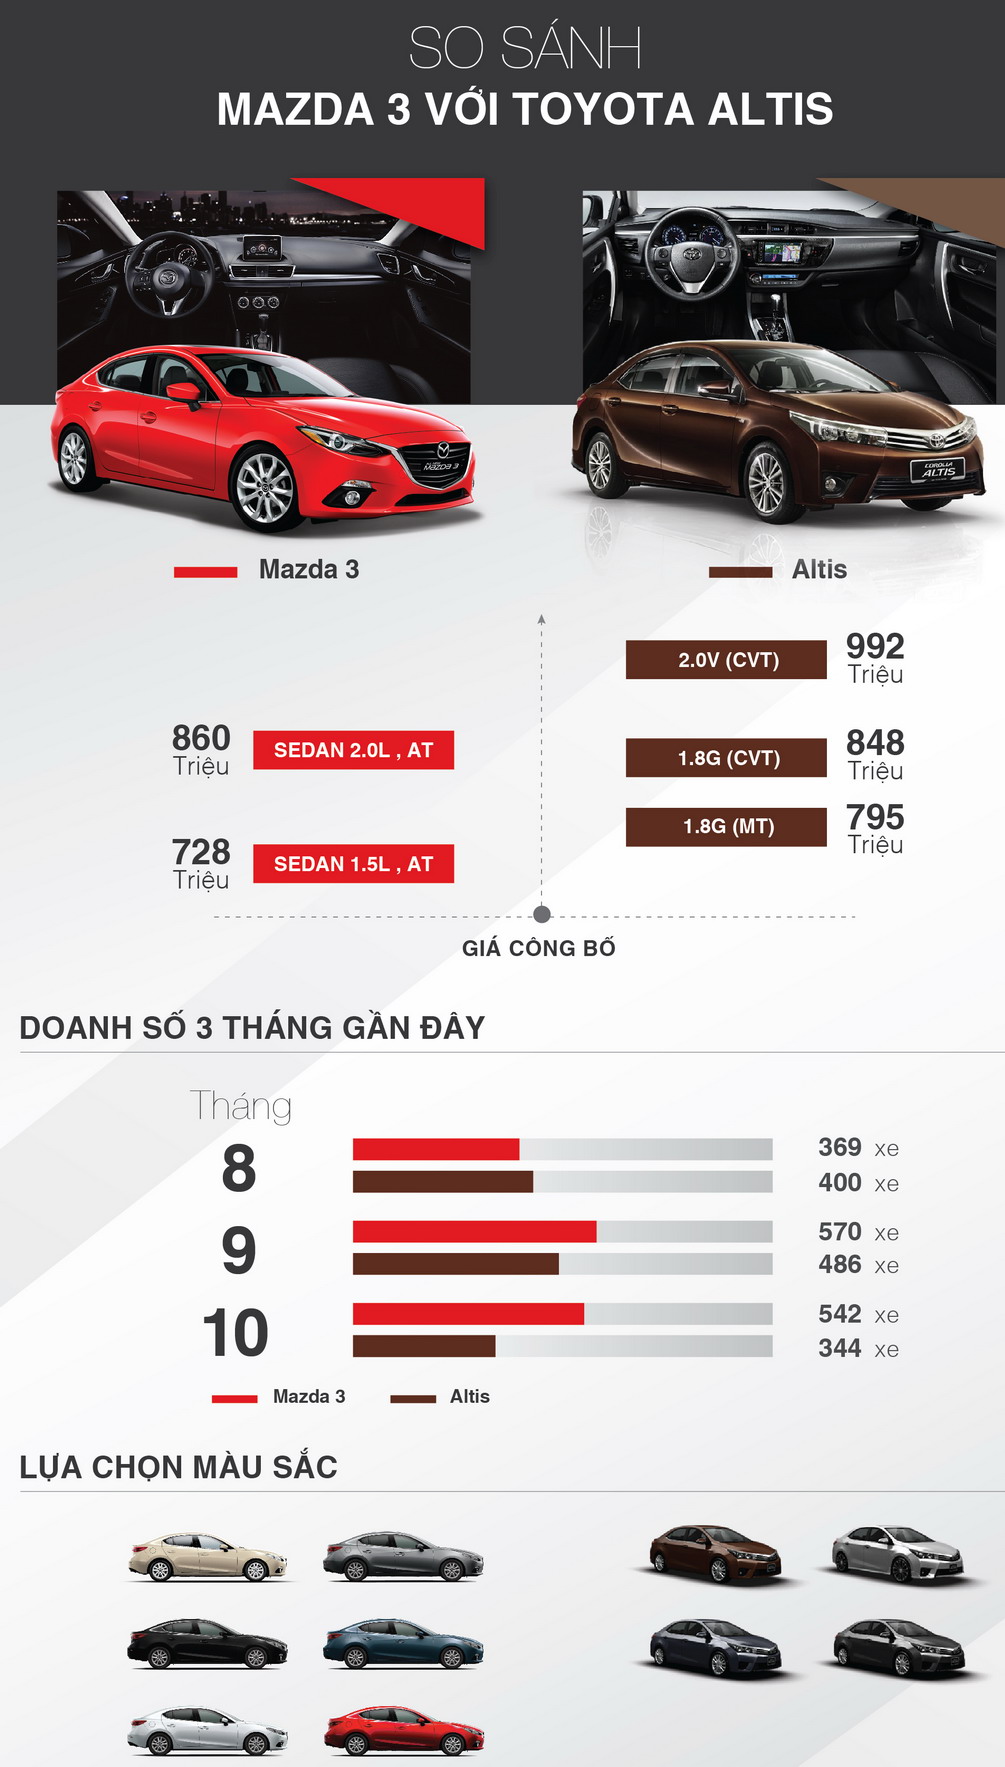 Mazda3 có giá hấp dẫn, doanh số bán cao, nhiều màu ngoại thất